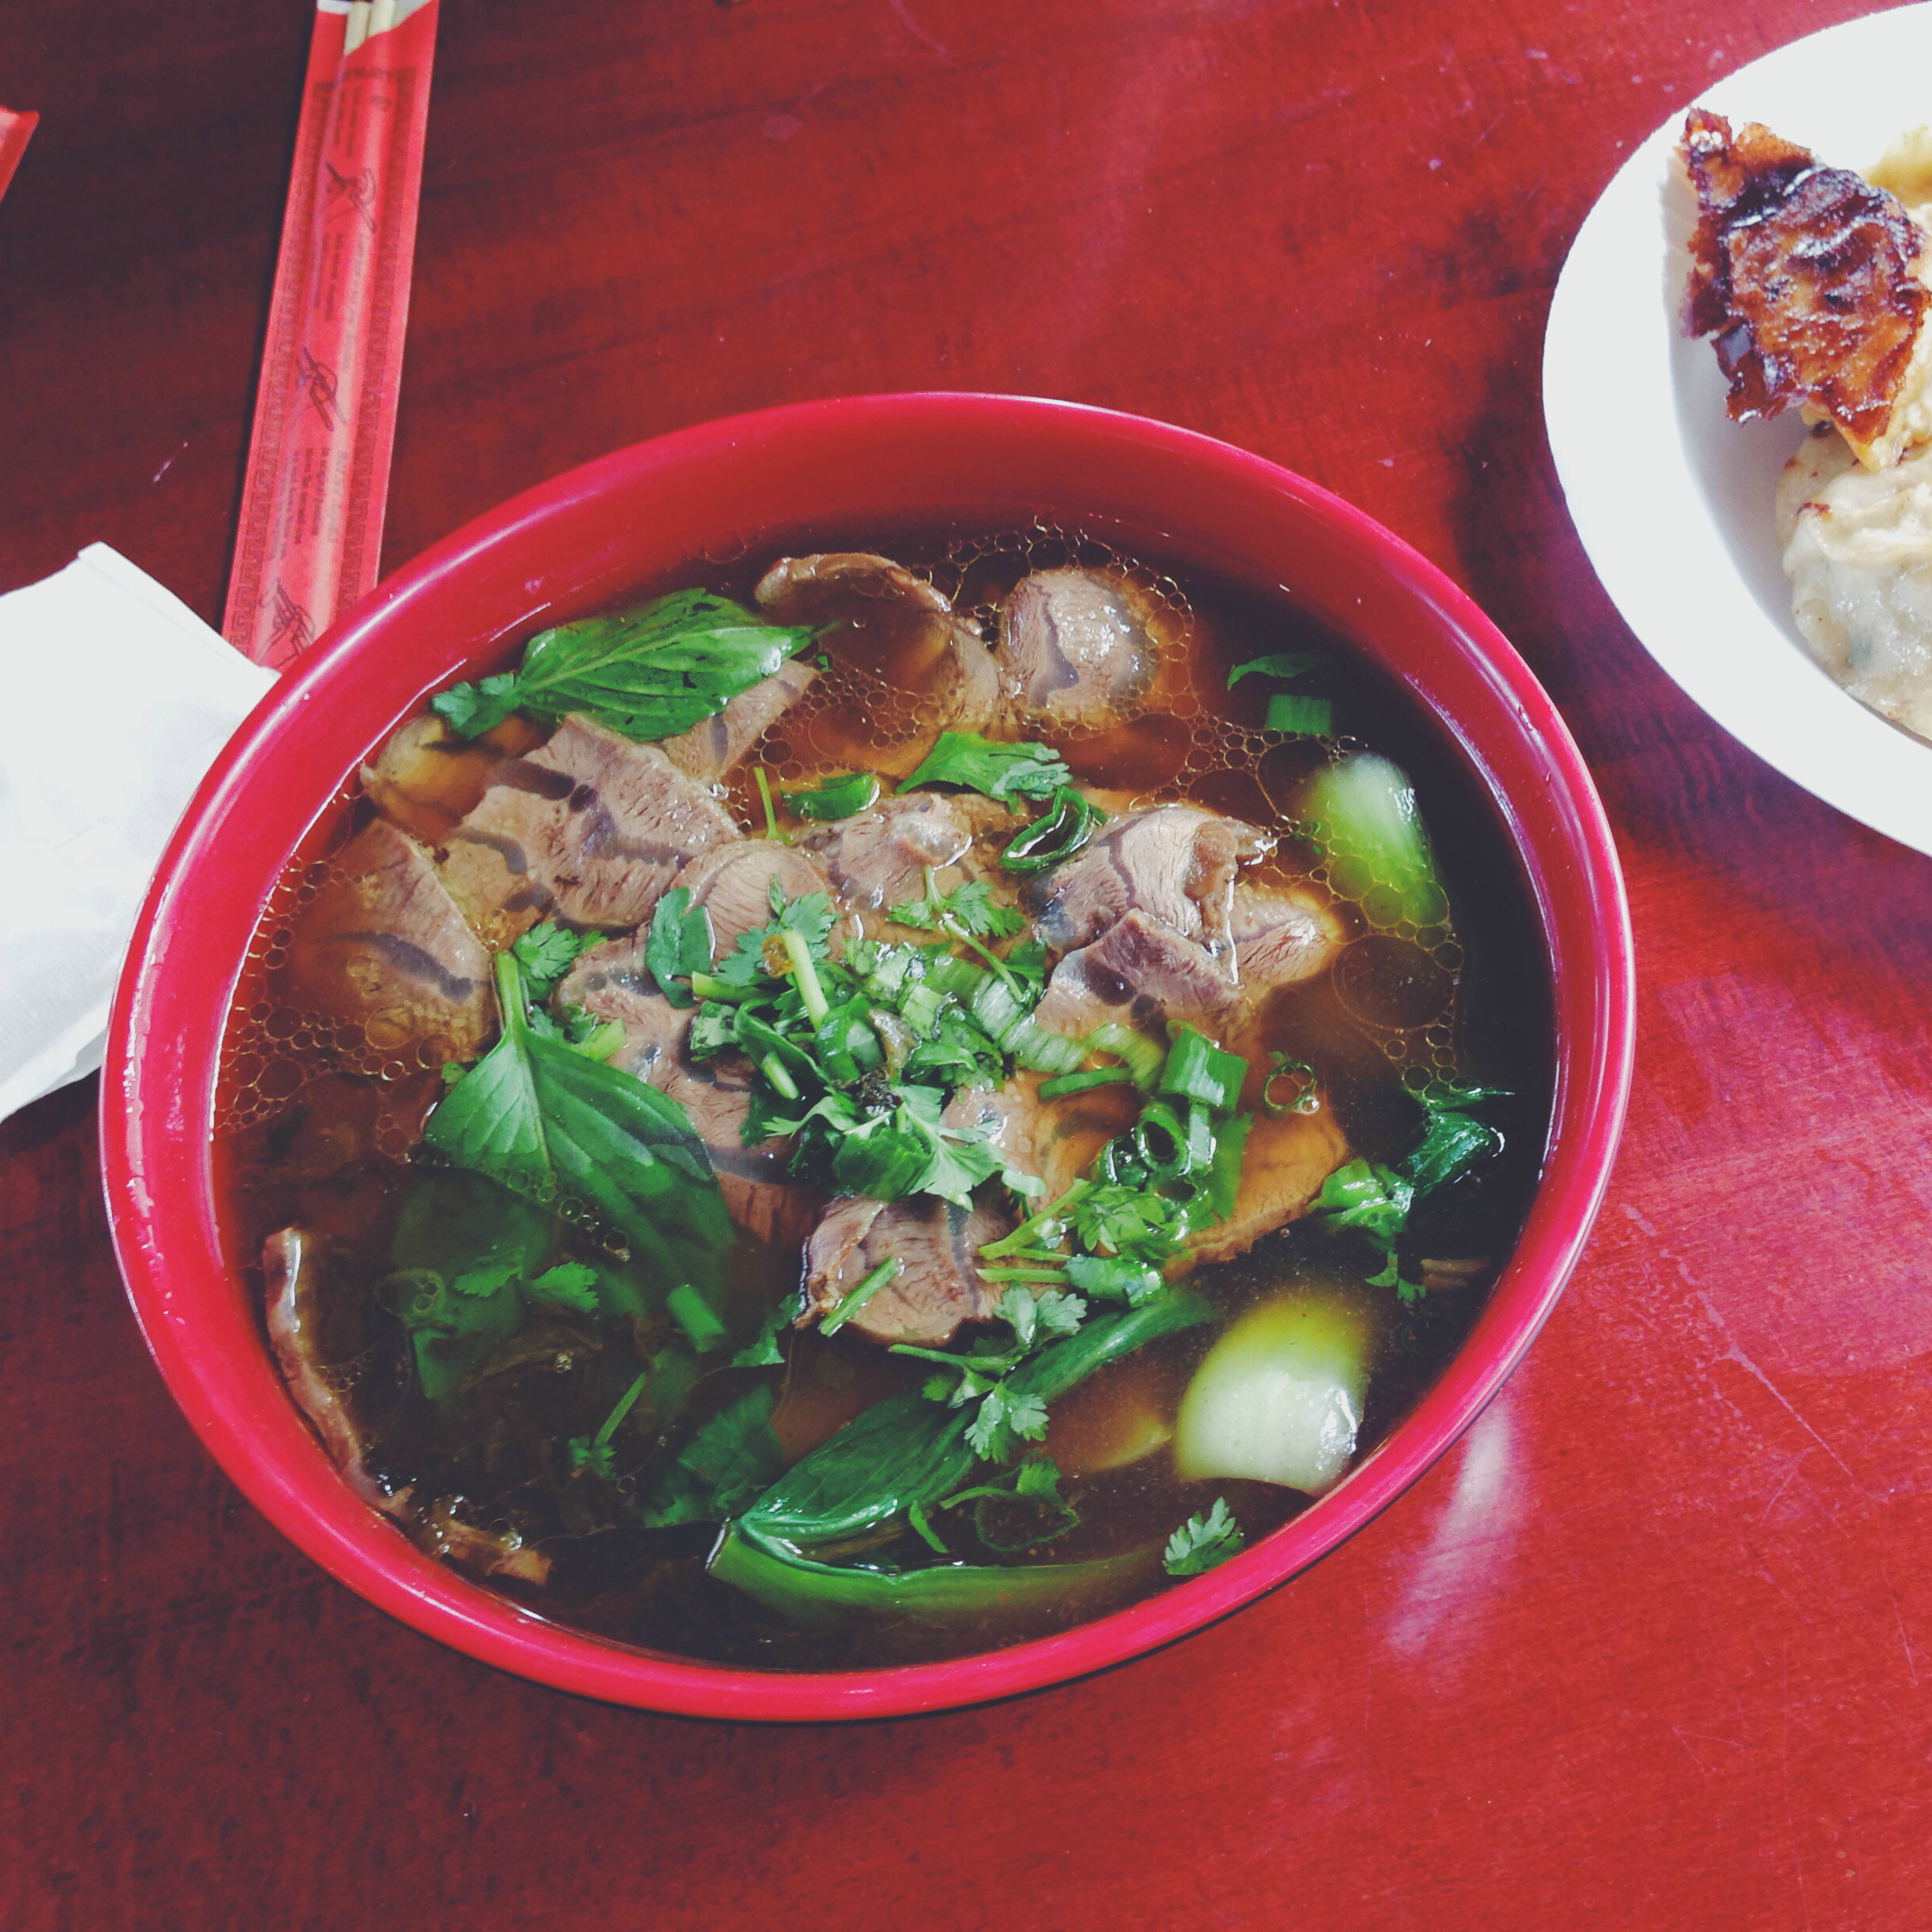  Beef noodle soup at Lao Bei Fang Dumpling House 